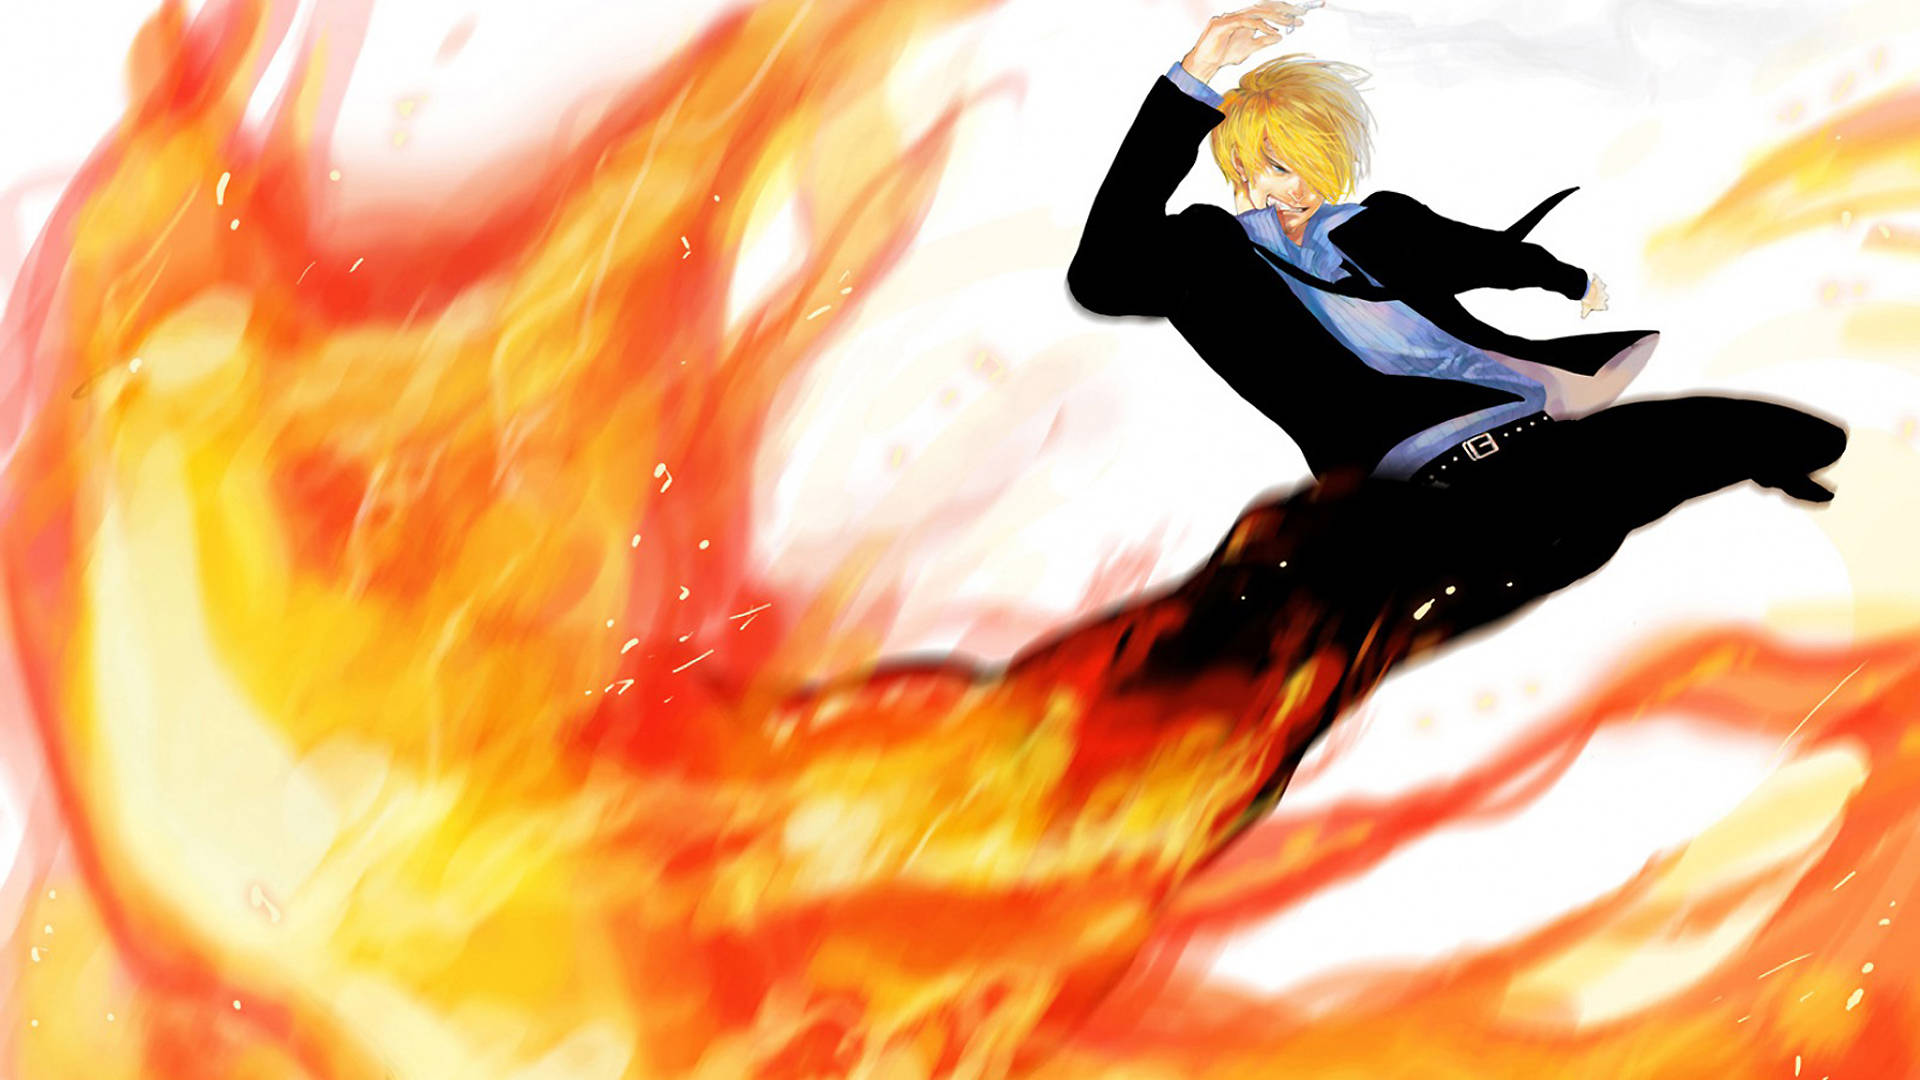 "Sanji in a fiery battle!" Wallpaper